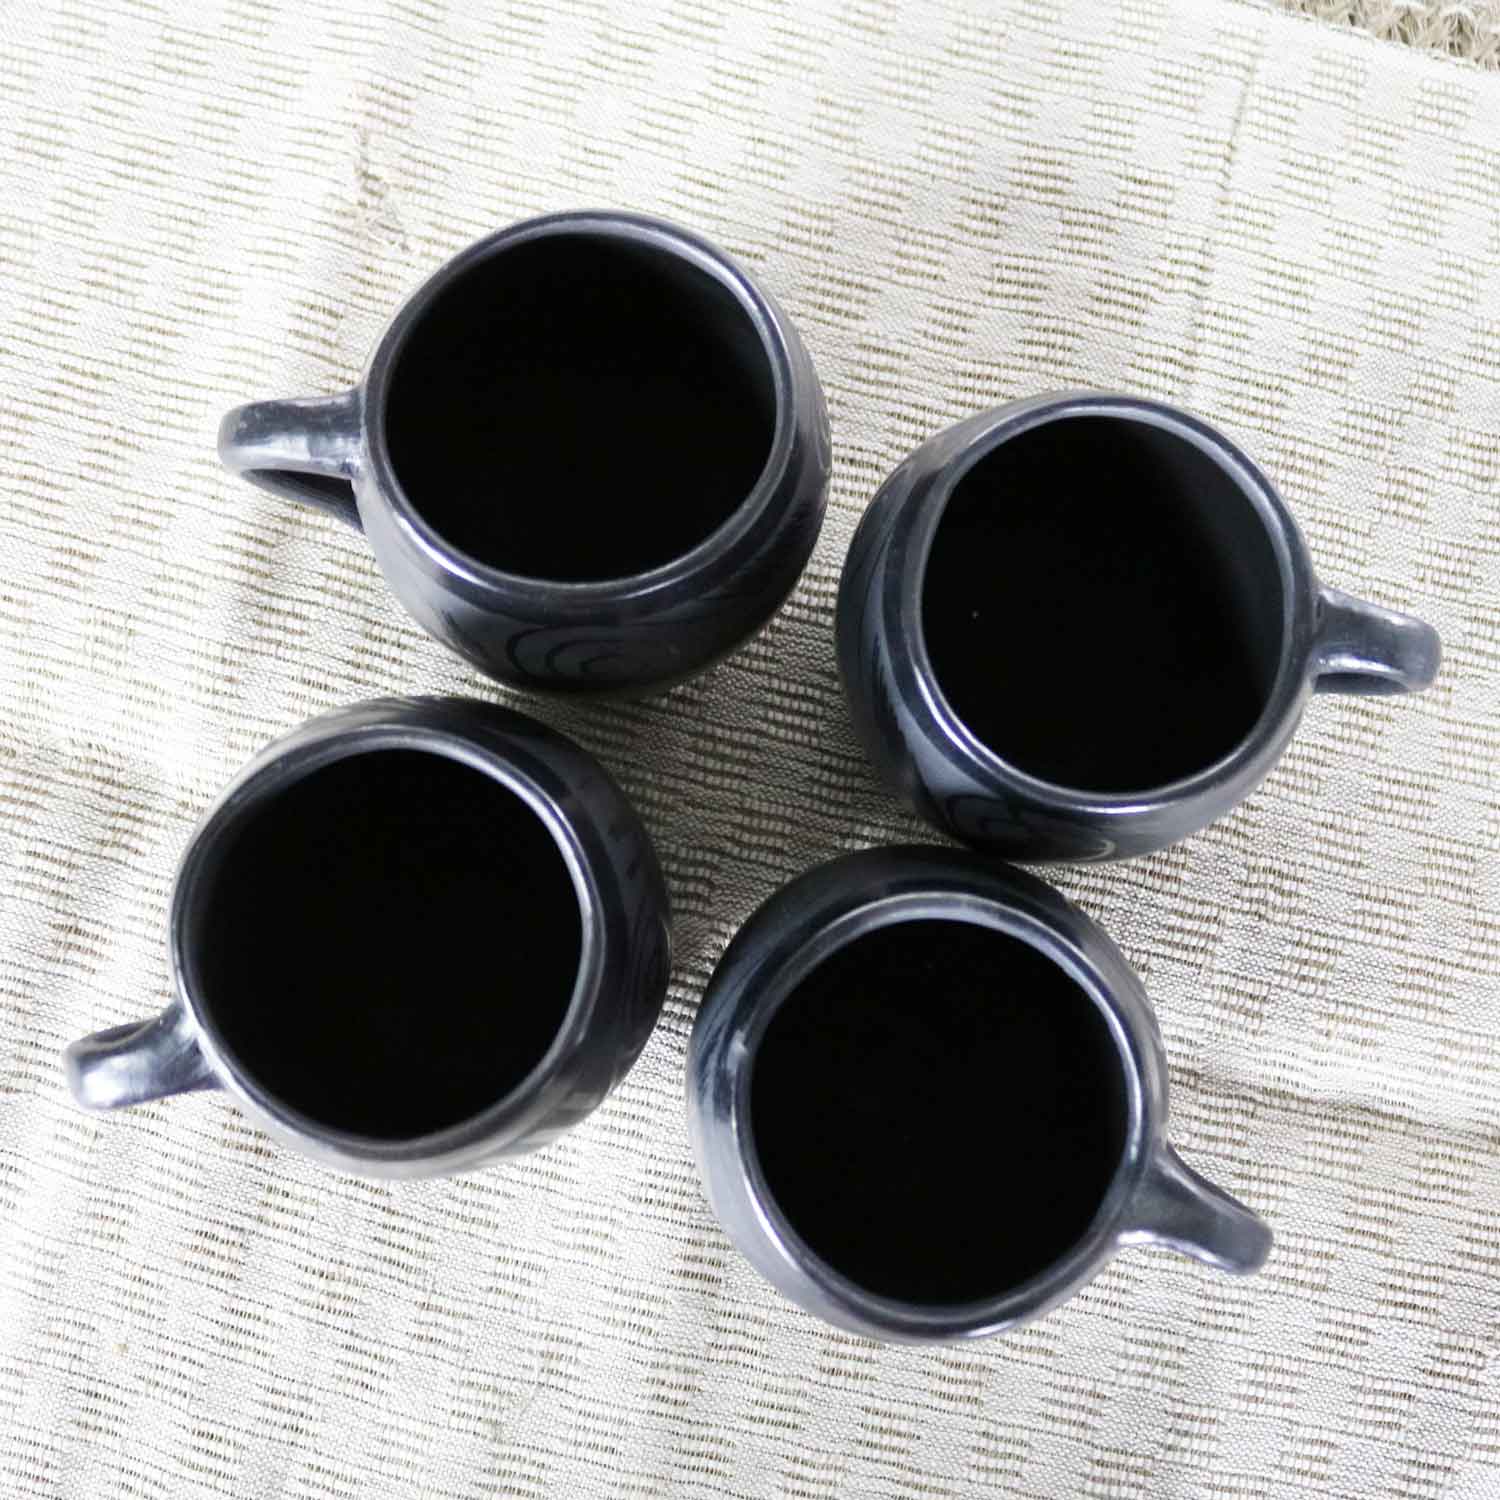 Black Clay Barro Negro Pottery Hot Chocolate Set Oaxaca Mexico 4 Mugs and Fish Tray